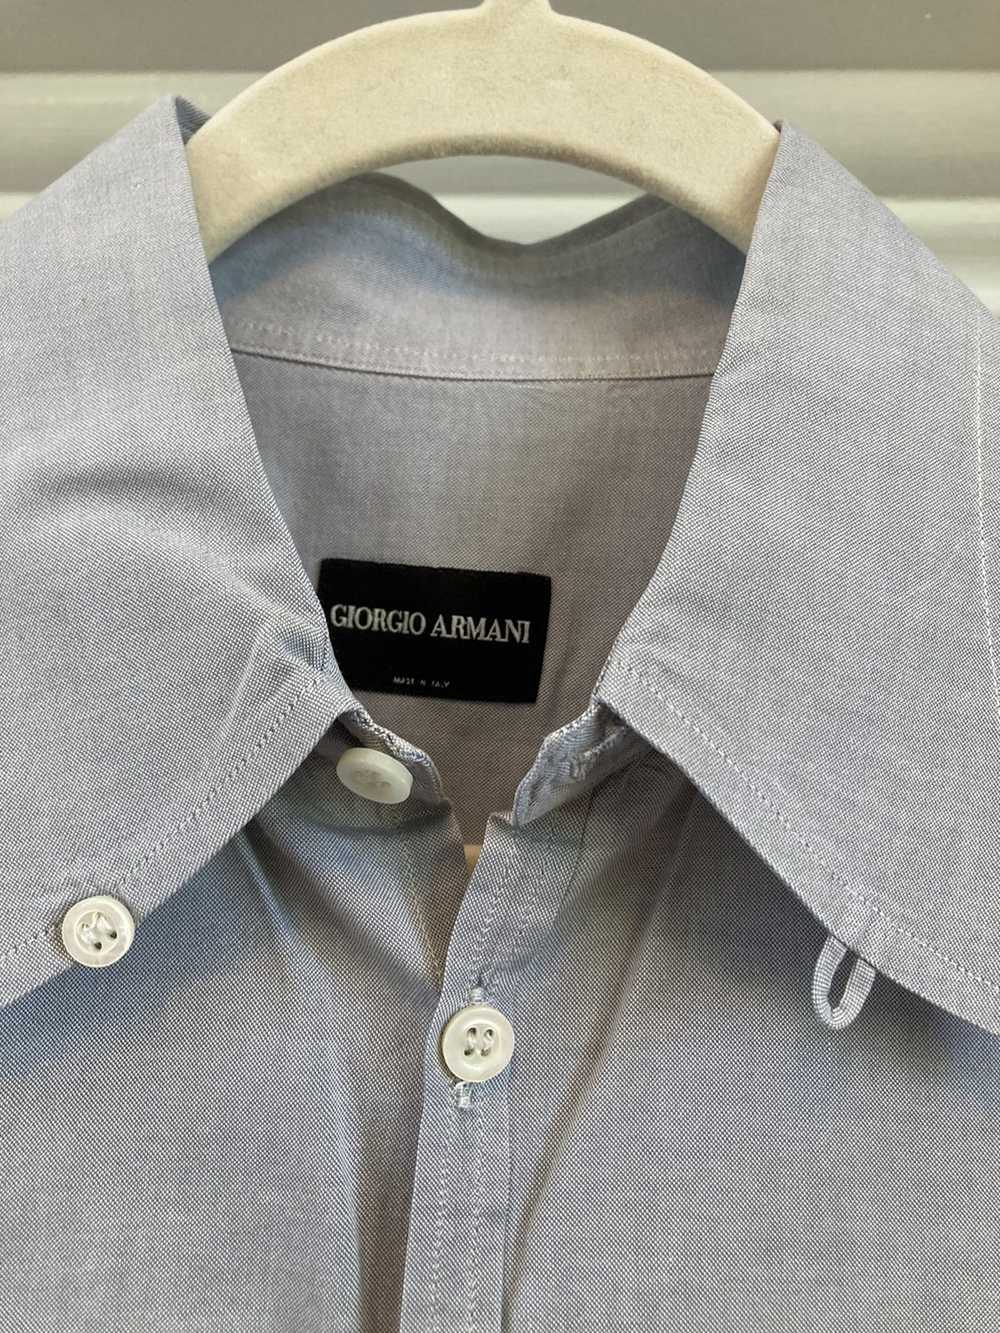 Giorgio Armani Giorgio Armani button up shirts - image 2